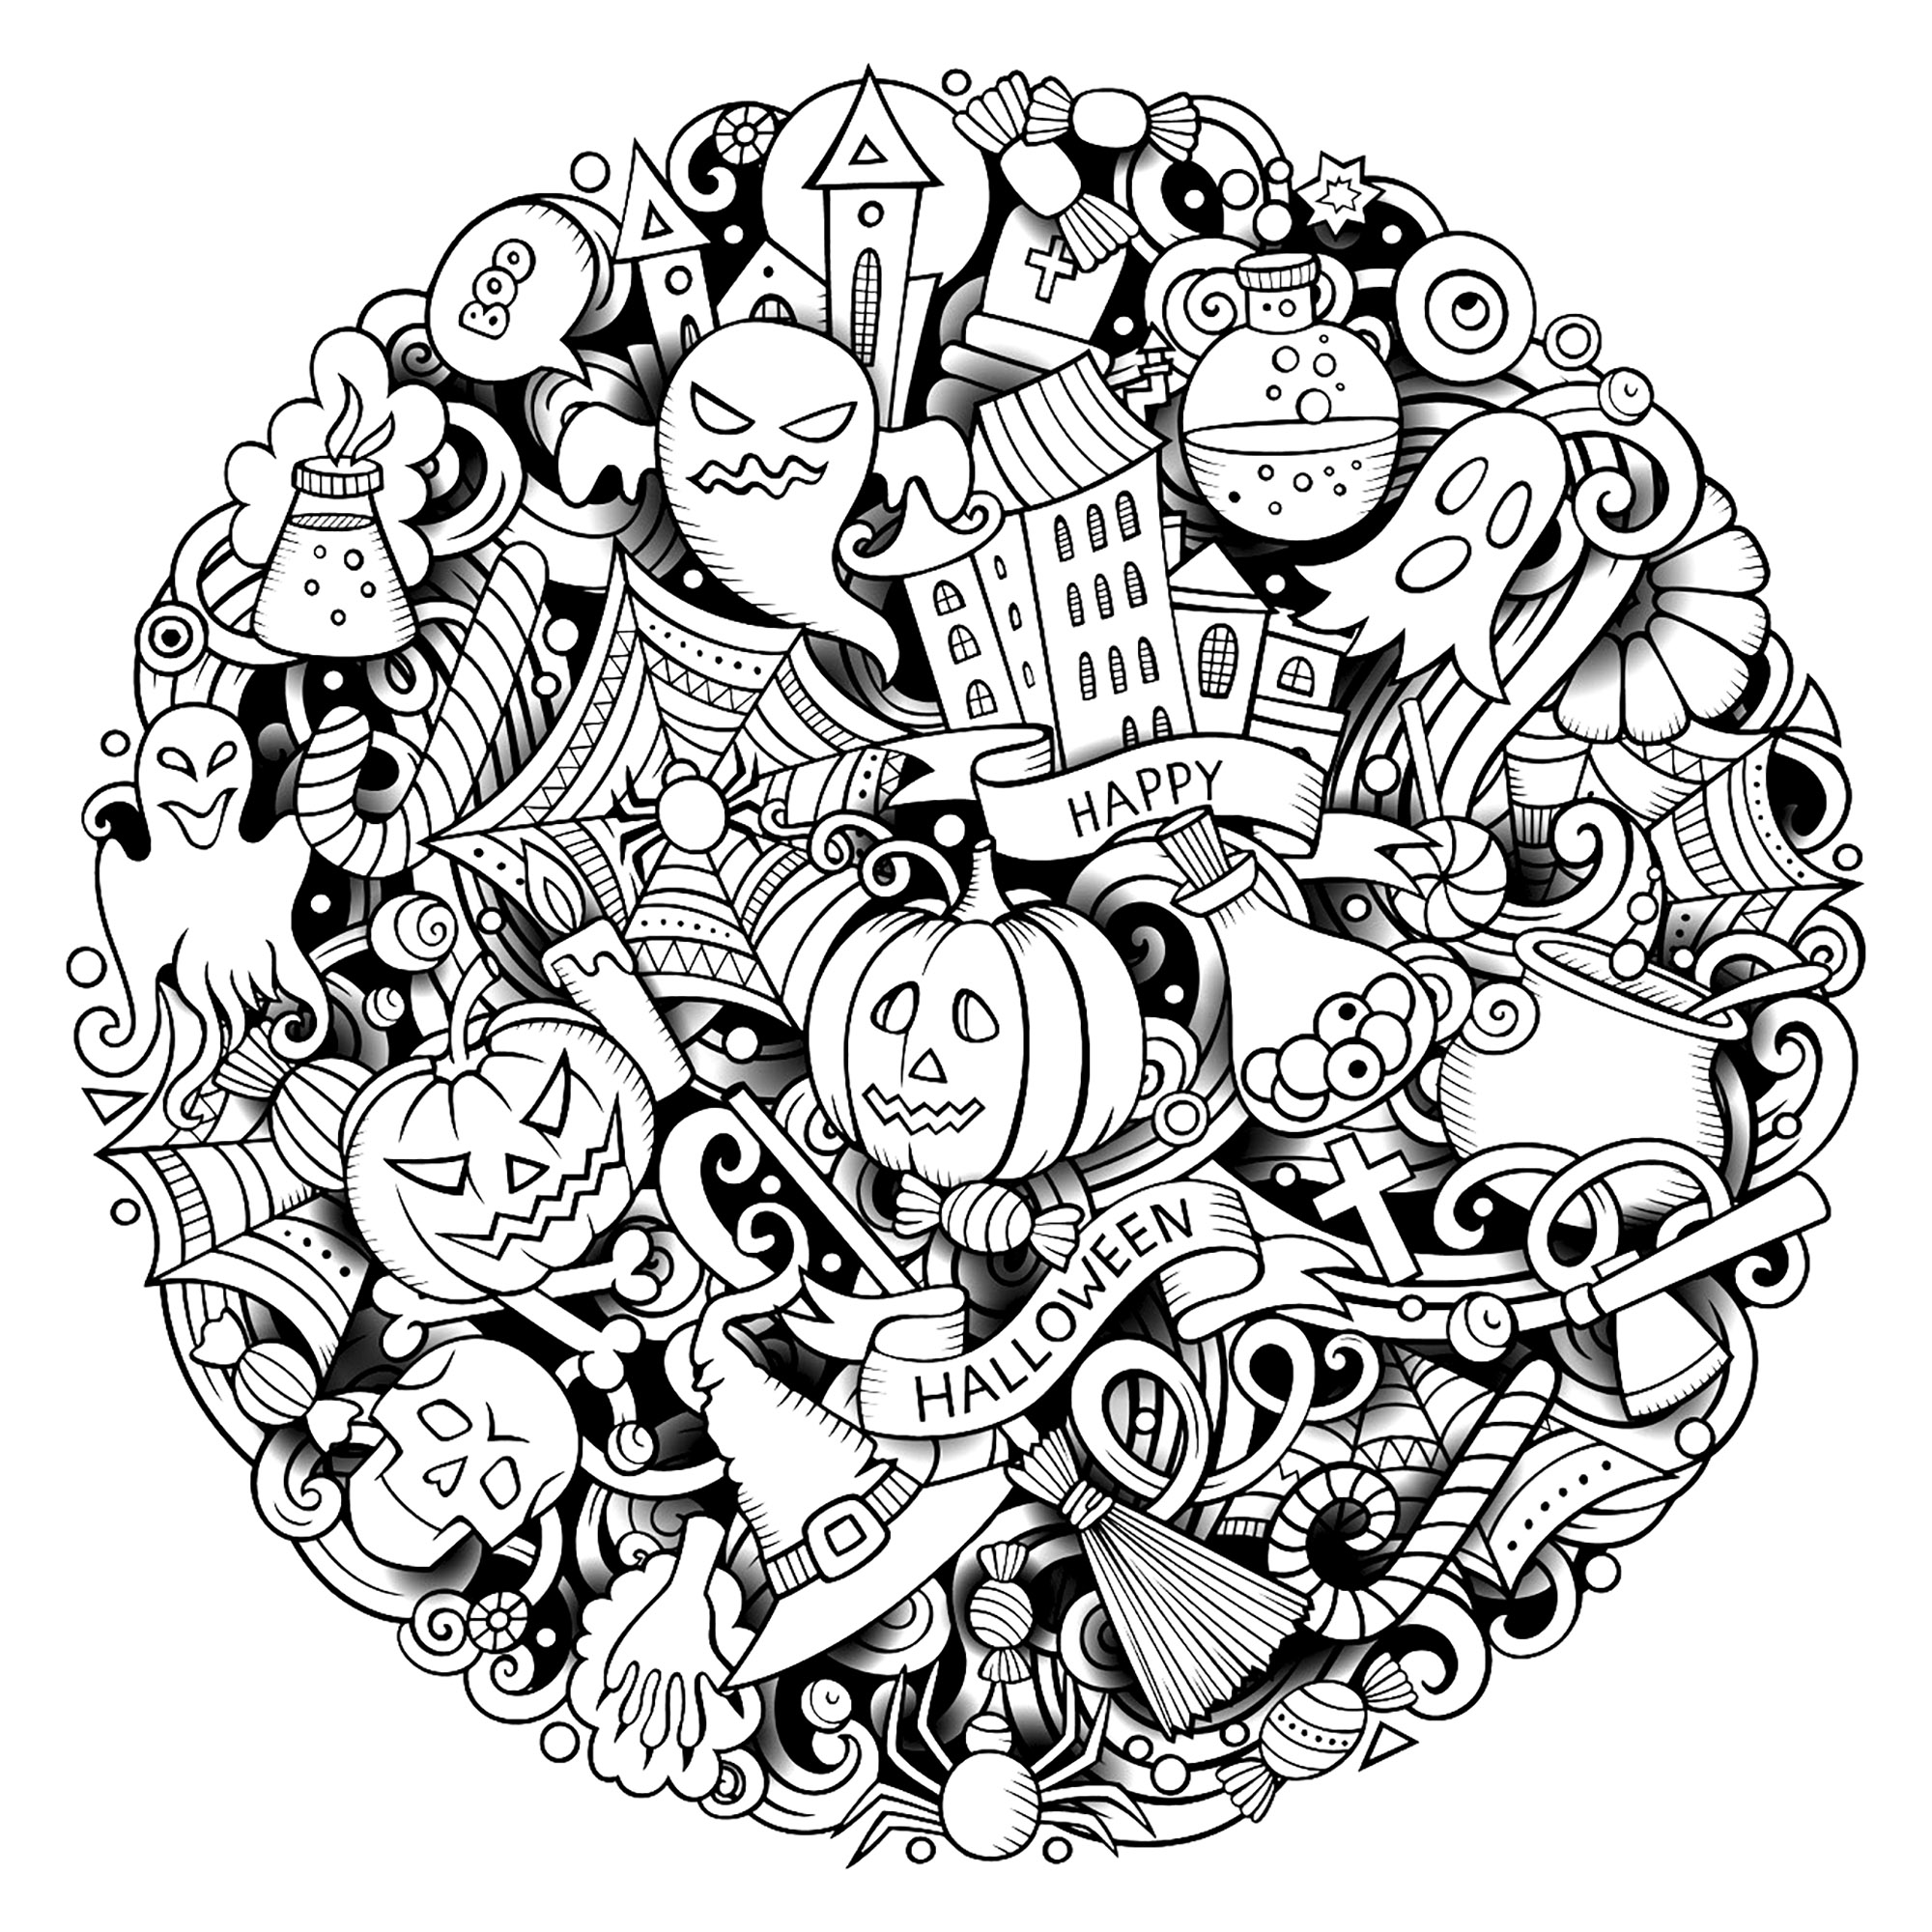 Un Doodle complexe d'Halloween. Divers symboles et personnages d'Halloween, dans un Doodle circulaire (citrouilles, fantômes, squelettes, araignées, etc ...), Source : 123rf   Artiste : Balbolka